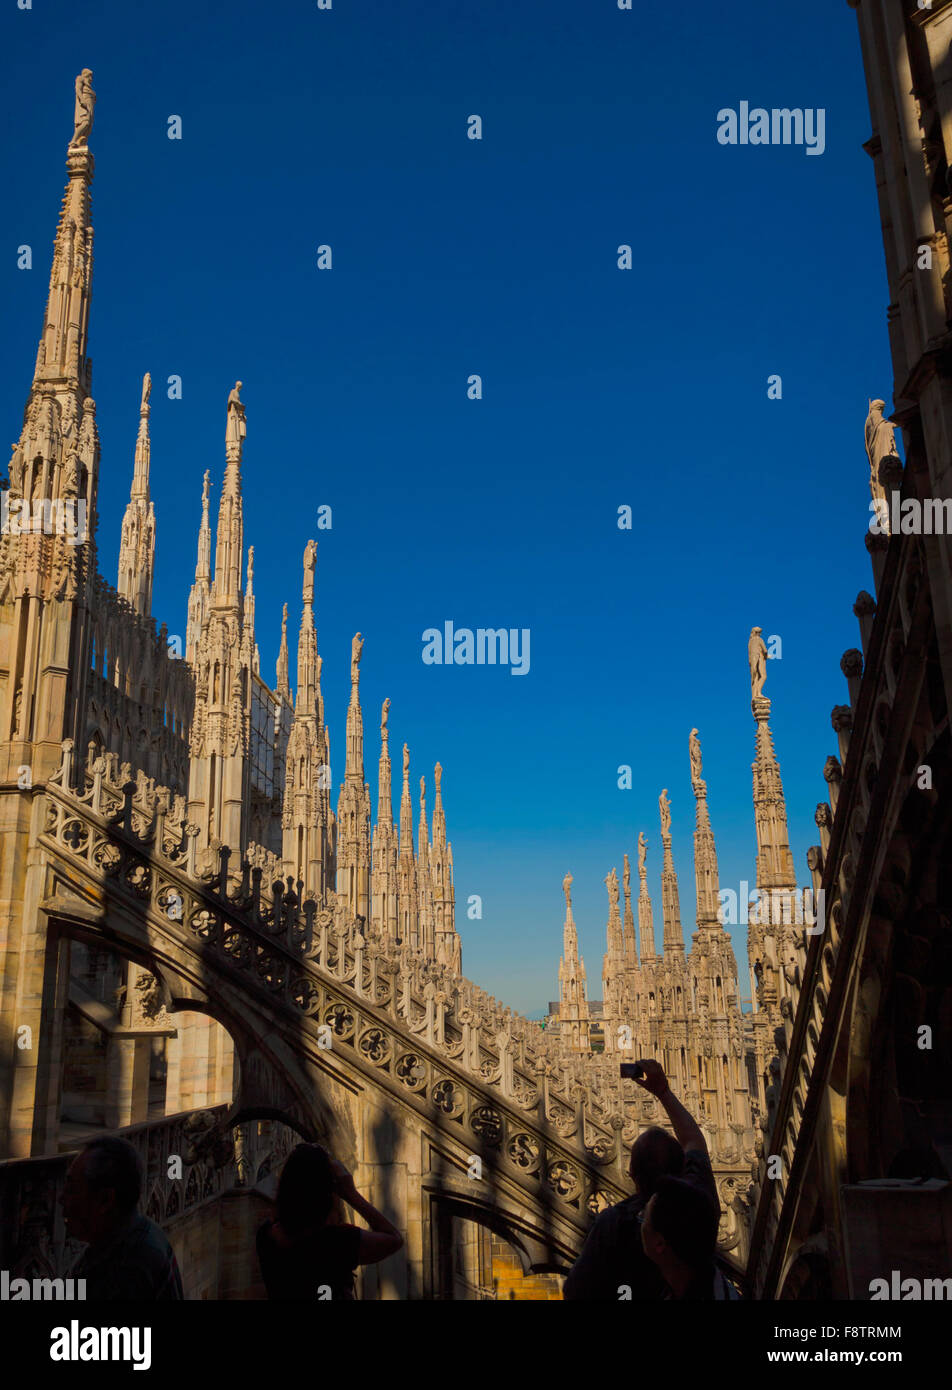 La Province de Milan, Milan, Lombardie, Italie. Spires sur le toit du Duomo, ou la cathédrale. Banque D'Images